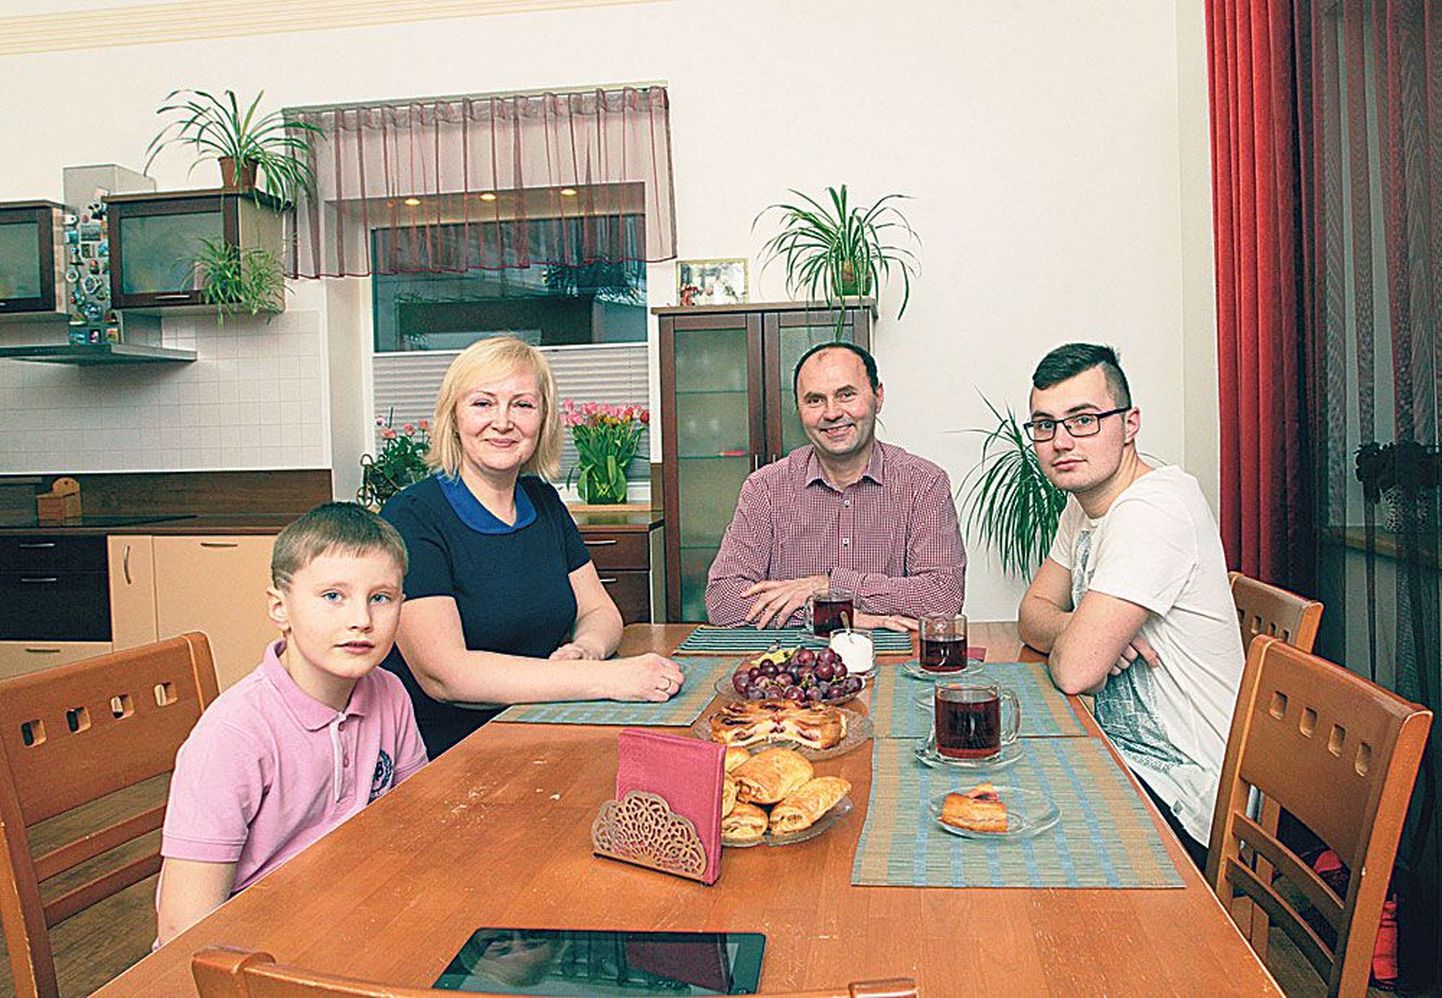 Õhtu ukraina kodus Tartus. Ümber laua on kogunenud 7-aastane Deivid (vasakult), ema Jelena ja isa Petro Babjak ning 20-aastane Maksim. Pildilt on puudu 16-aastane Erika ja 23-aastane Rostislav. Erika õpib Tallinnas ja Rostislav elab Šotimaal.